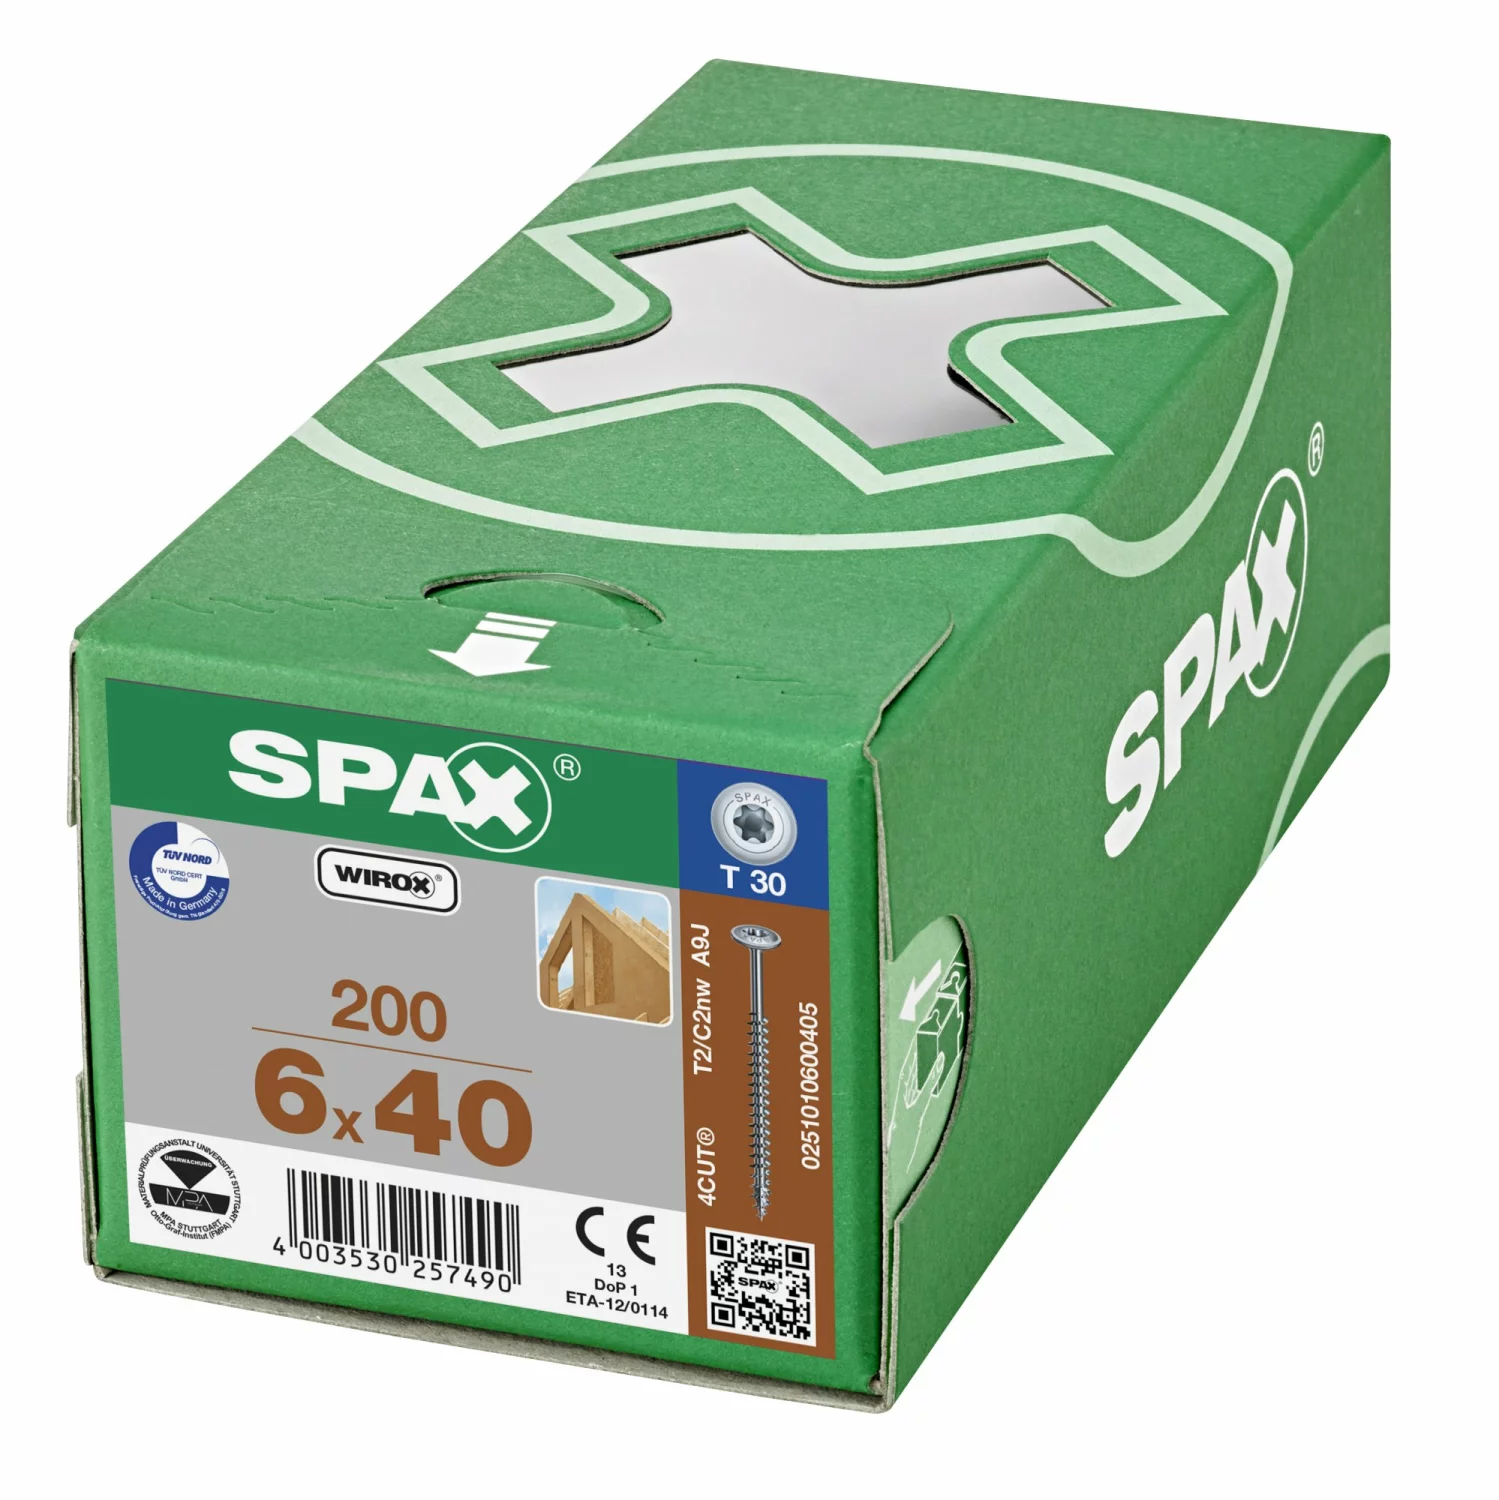 SPAX 251010600405 Hi-Force schroef, Discuskop, 6 x 40, Voldraad, T-STAR plus T30 - WIROX - 200 stuks